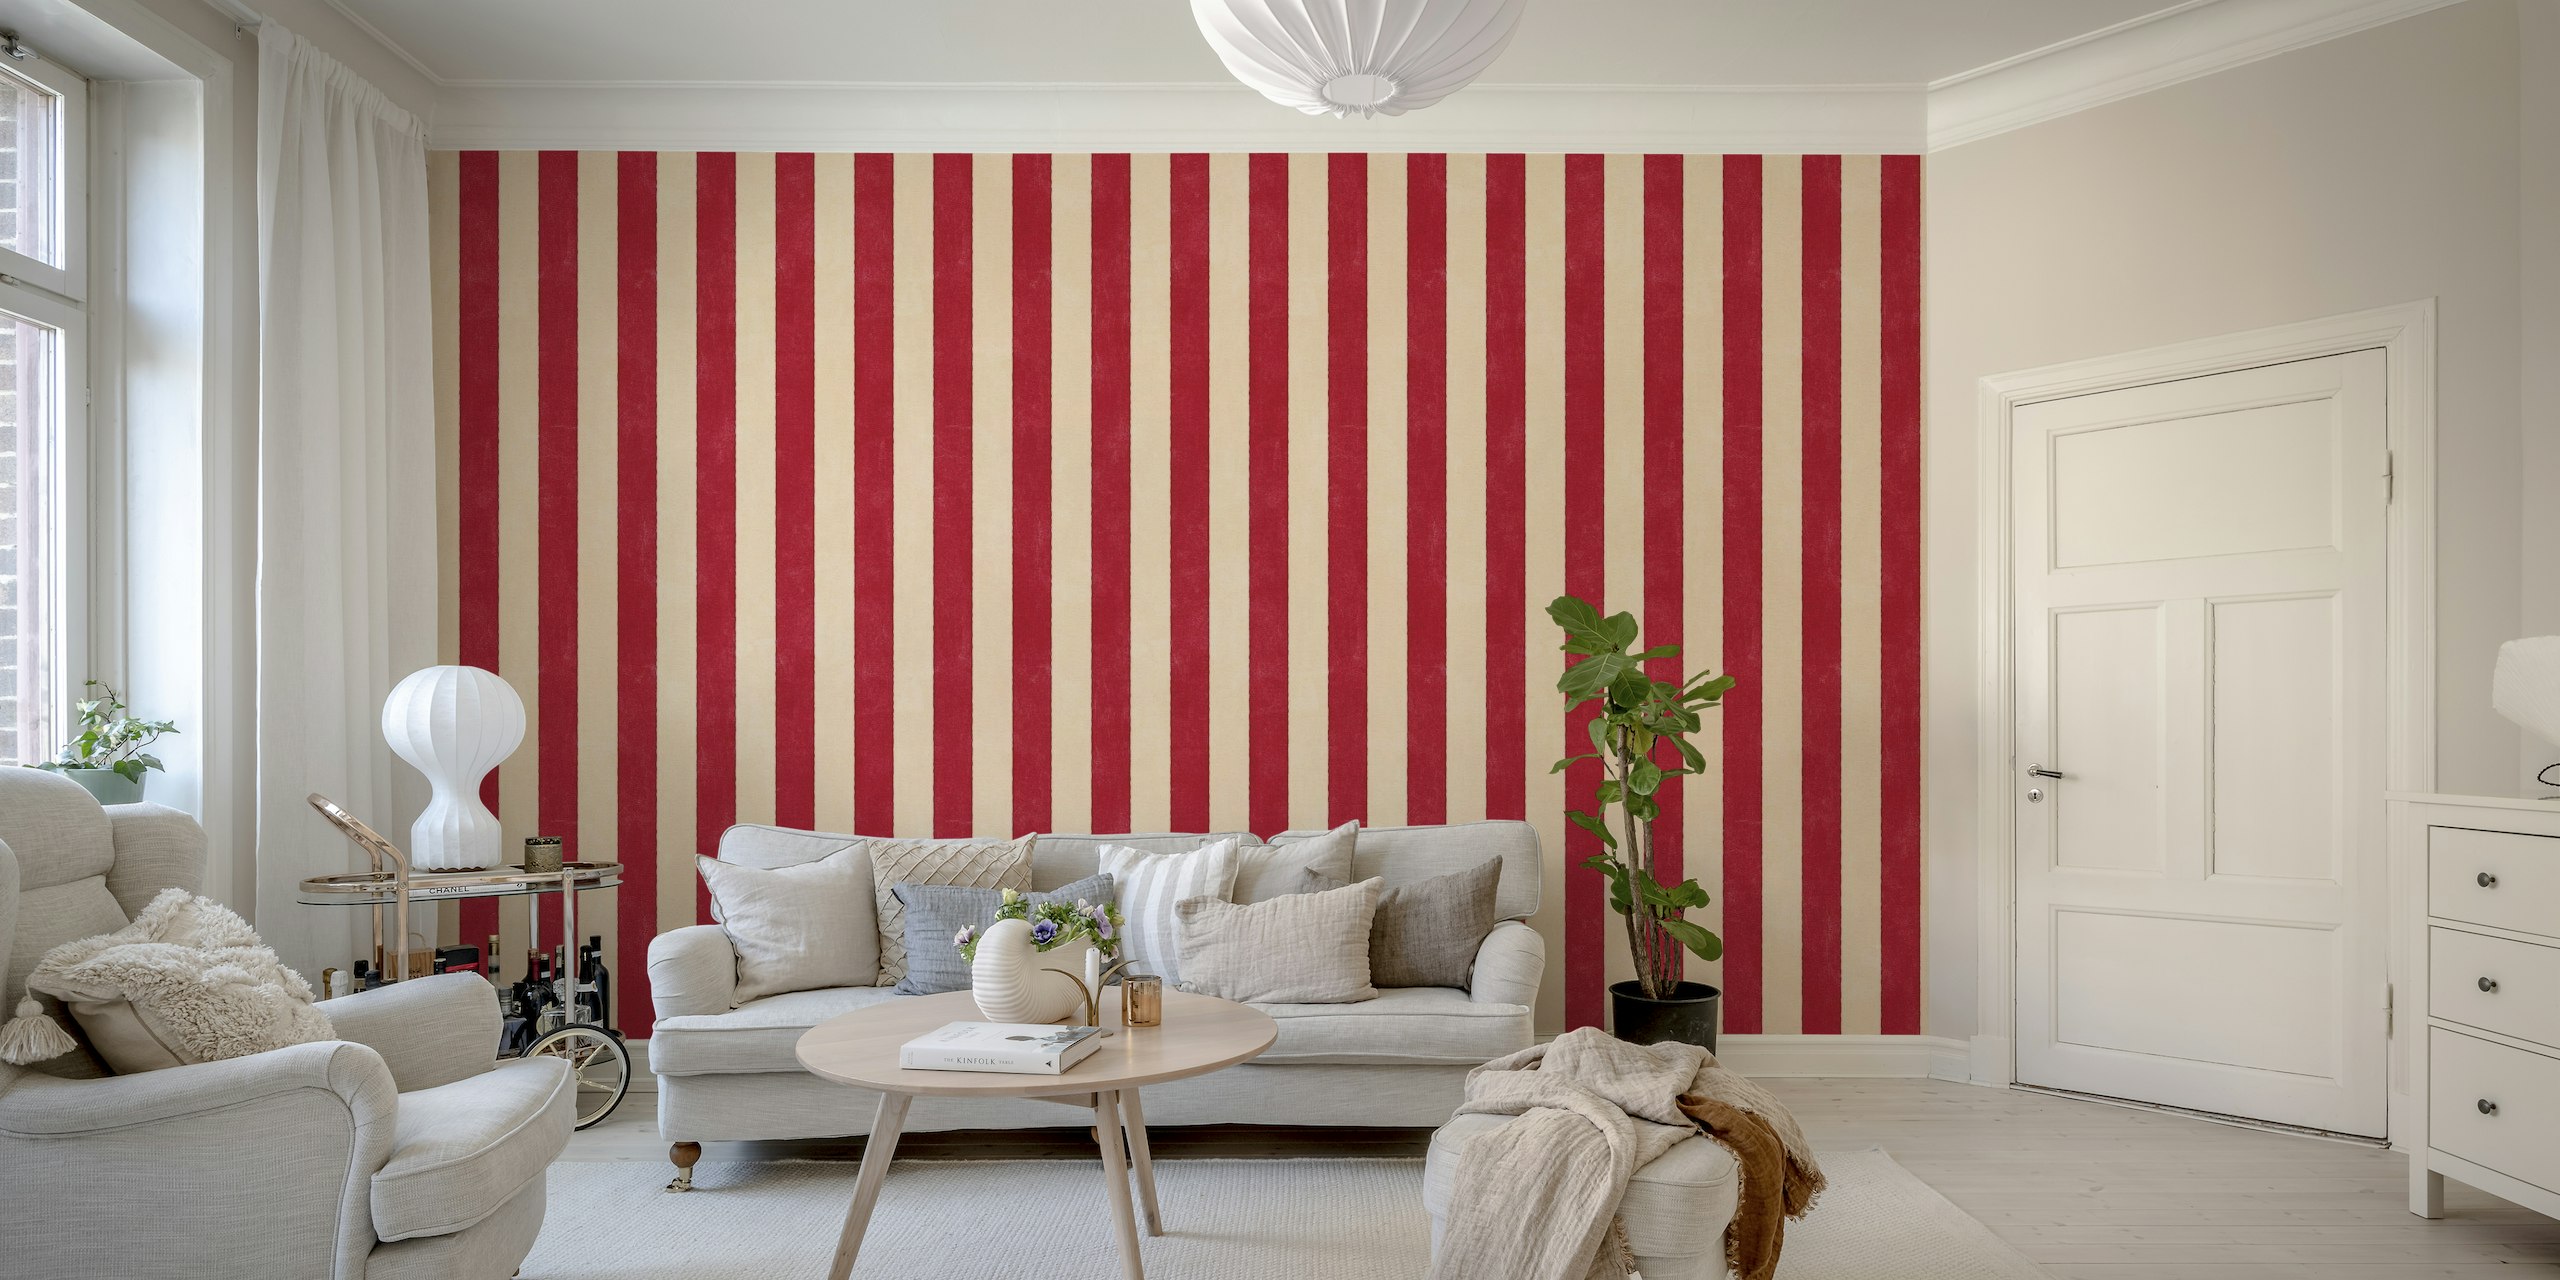 Röd och benvit vertikal randig väggmålning